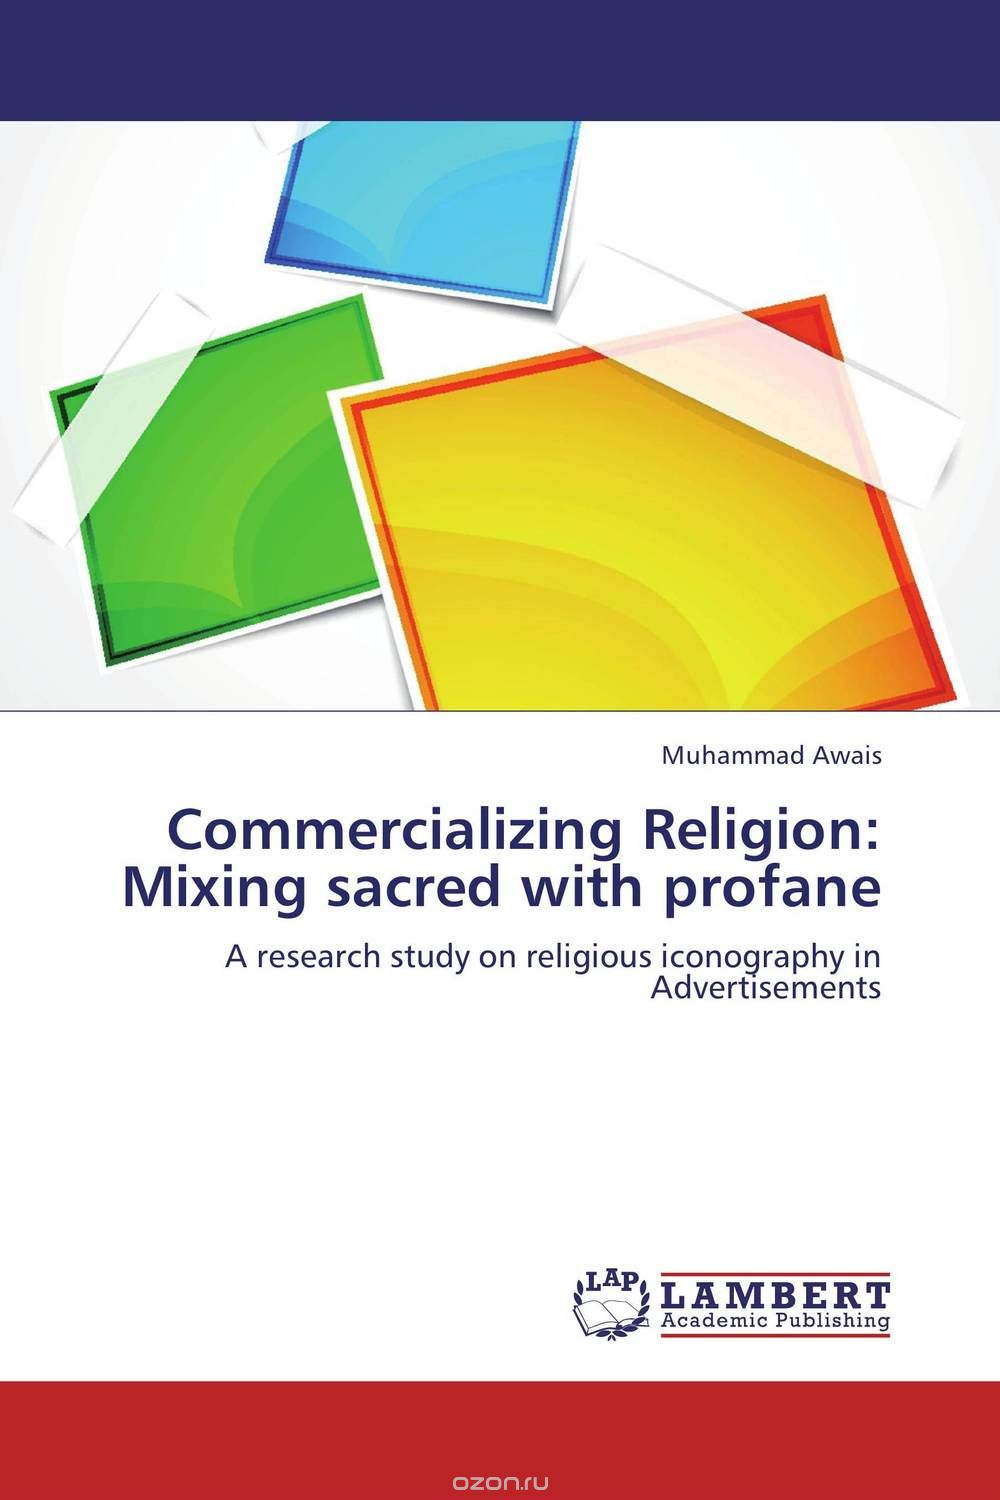 Скачать книгу "Commercializing Religion: Mixing sacred with profane"